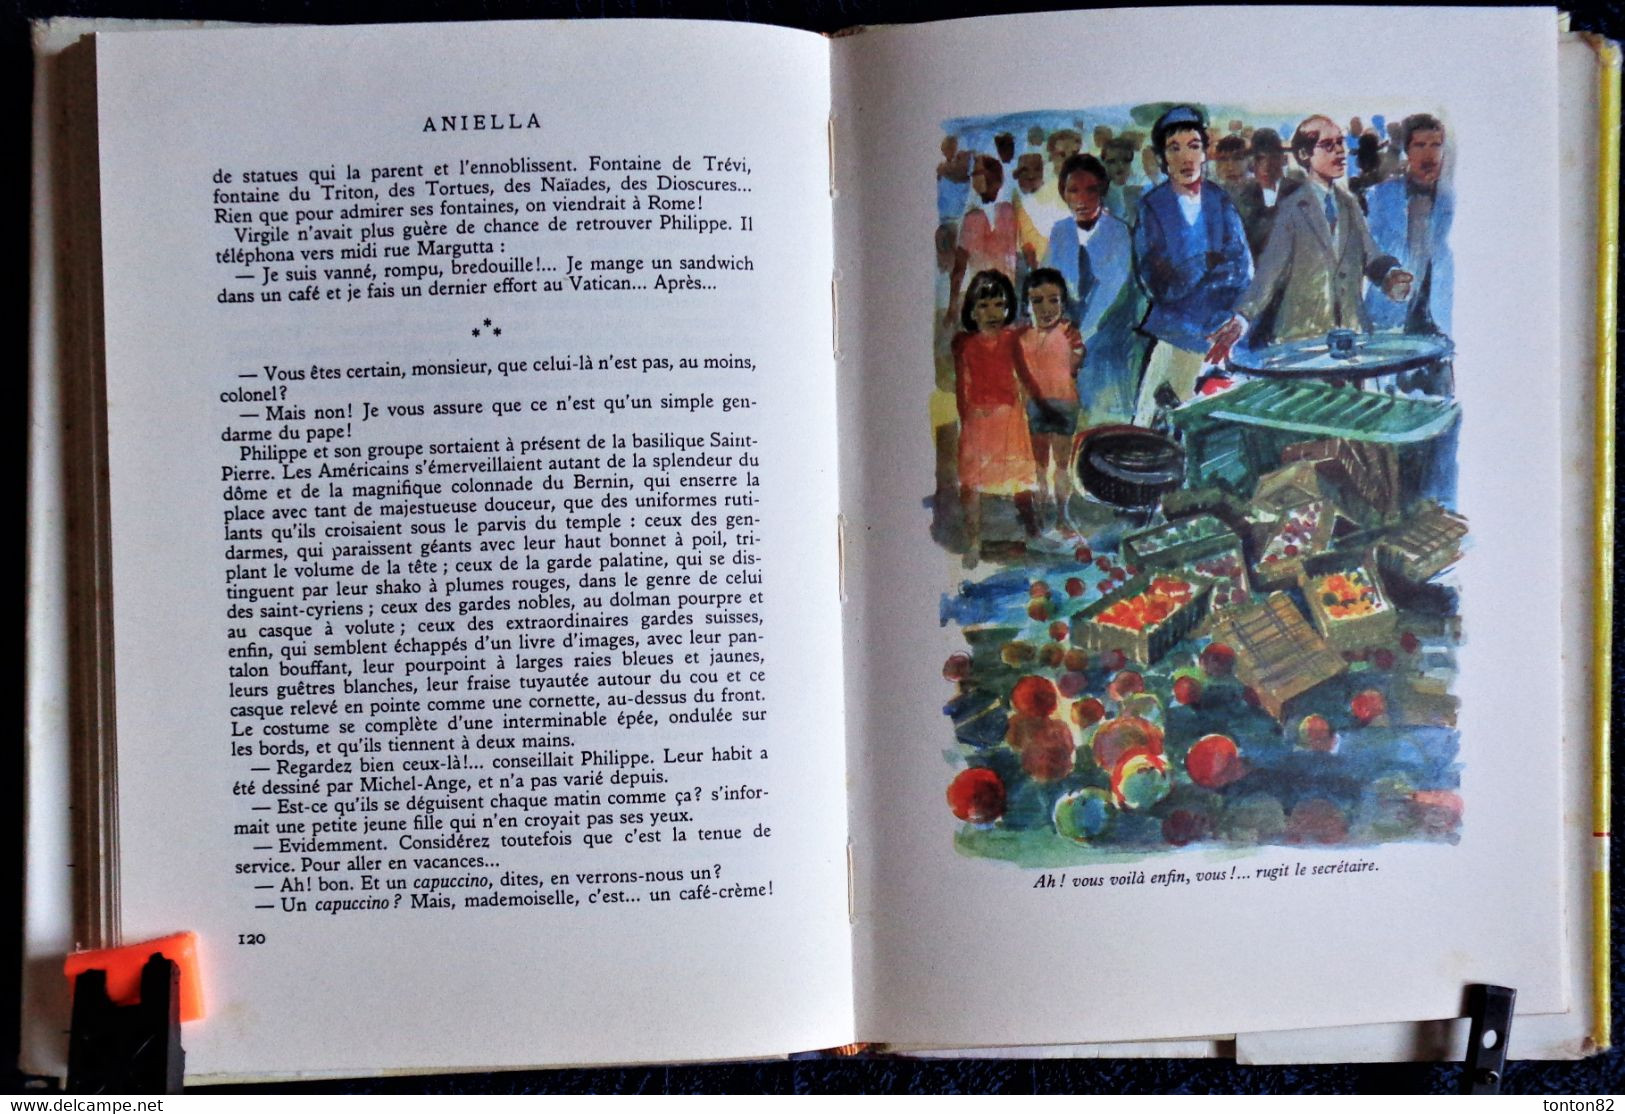 Saint-Marcoux - Aniéla - Bibliothèque Rouge Et Or - N° 633 - ( 1962 ) . - Bibliotheque Rouge Et Or